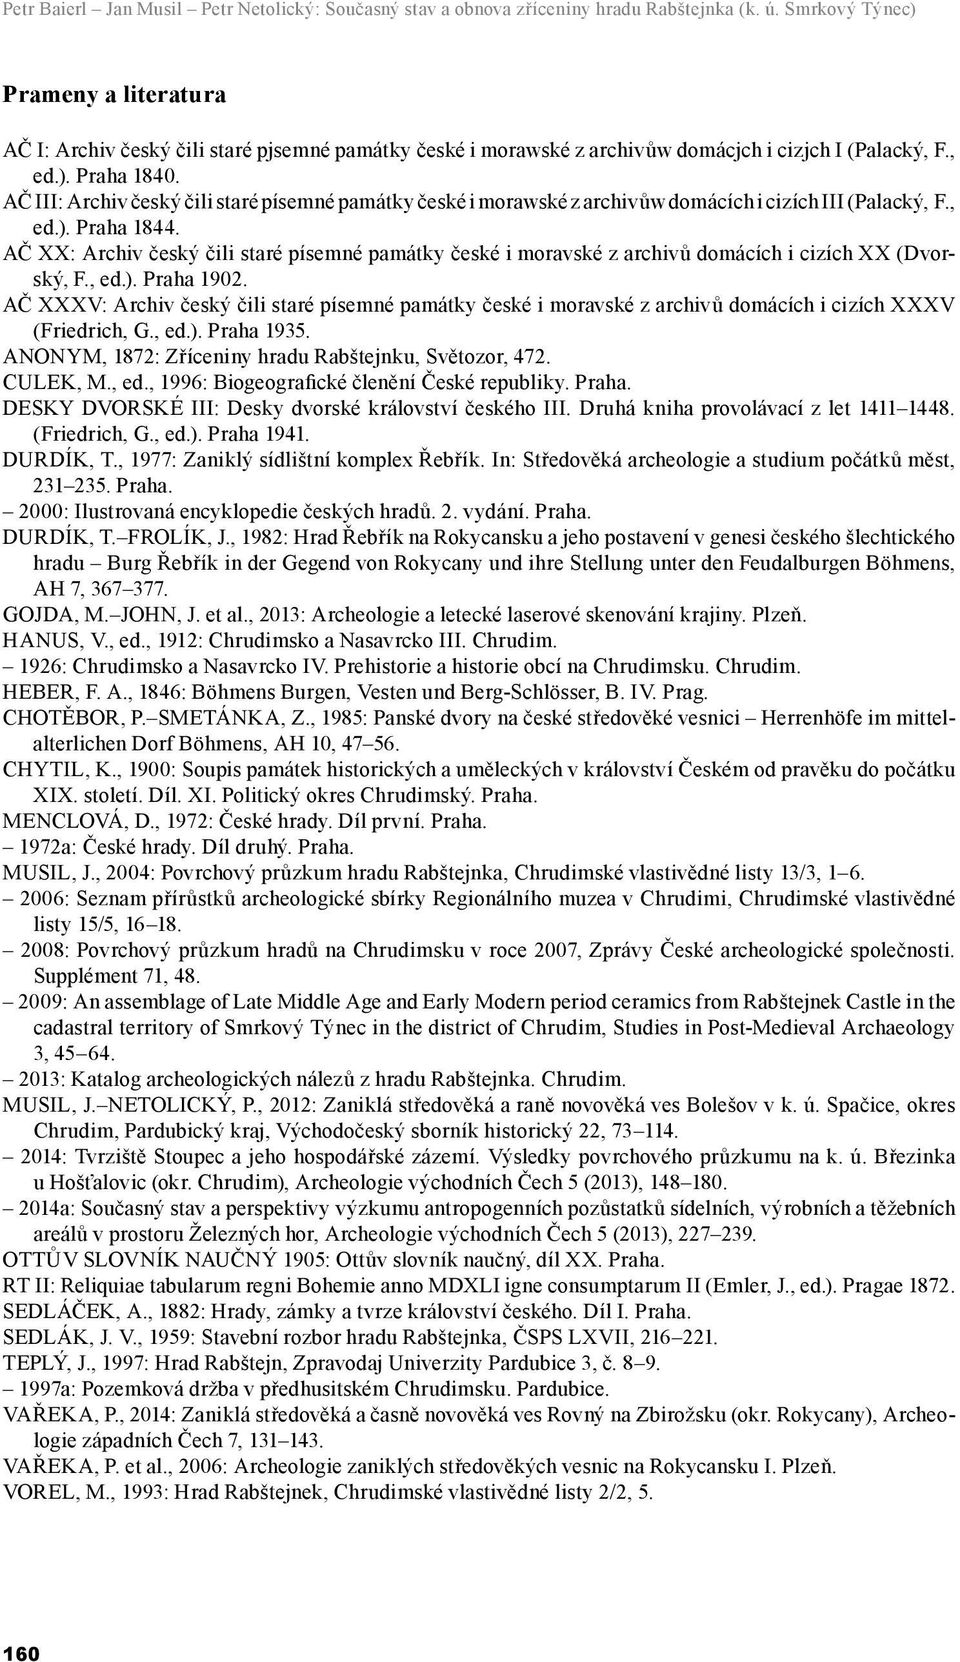 AČ III: Archiv český čili staré písemné památky české i morawské z archivůw domácích i cizích III (Palacký, F., ed.). Praha 1844.